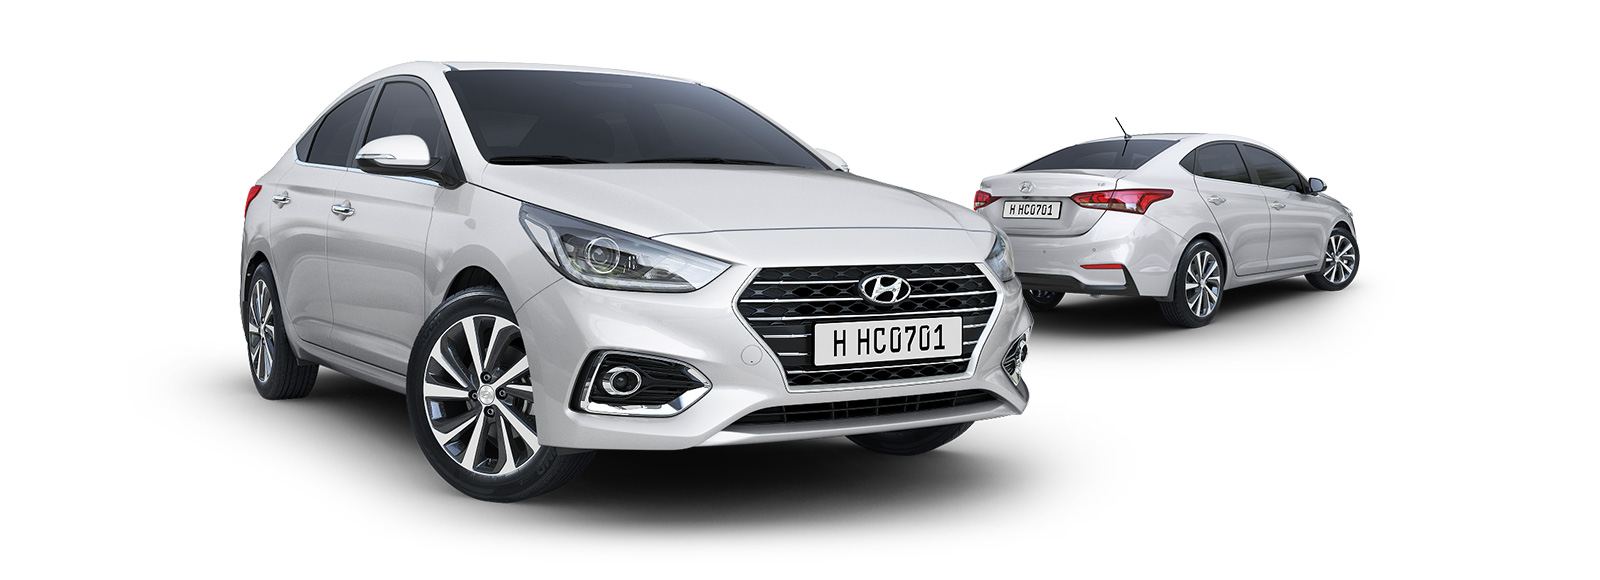 2019 Hyundai Accent Review in UAE - Specs, Price, Photos, Videos ...